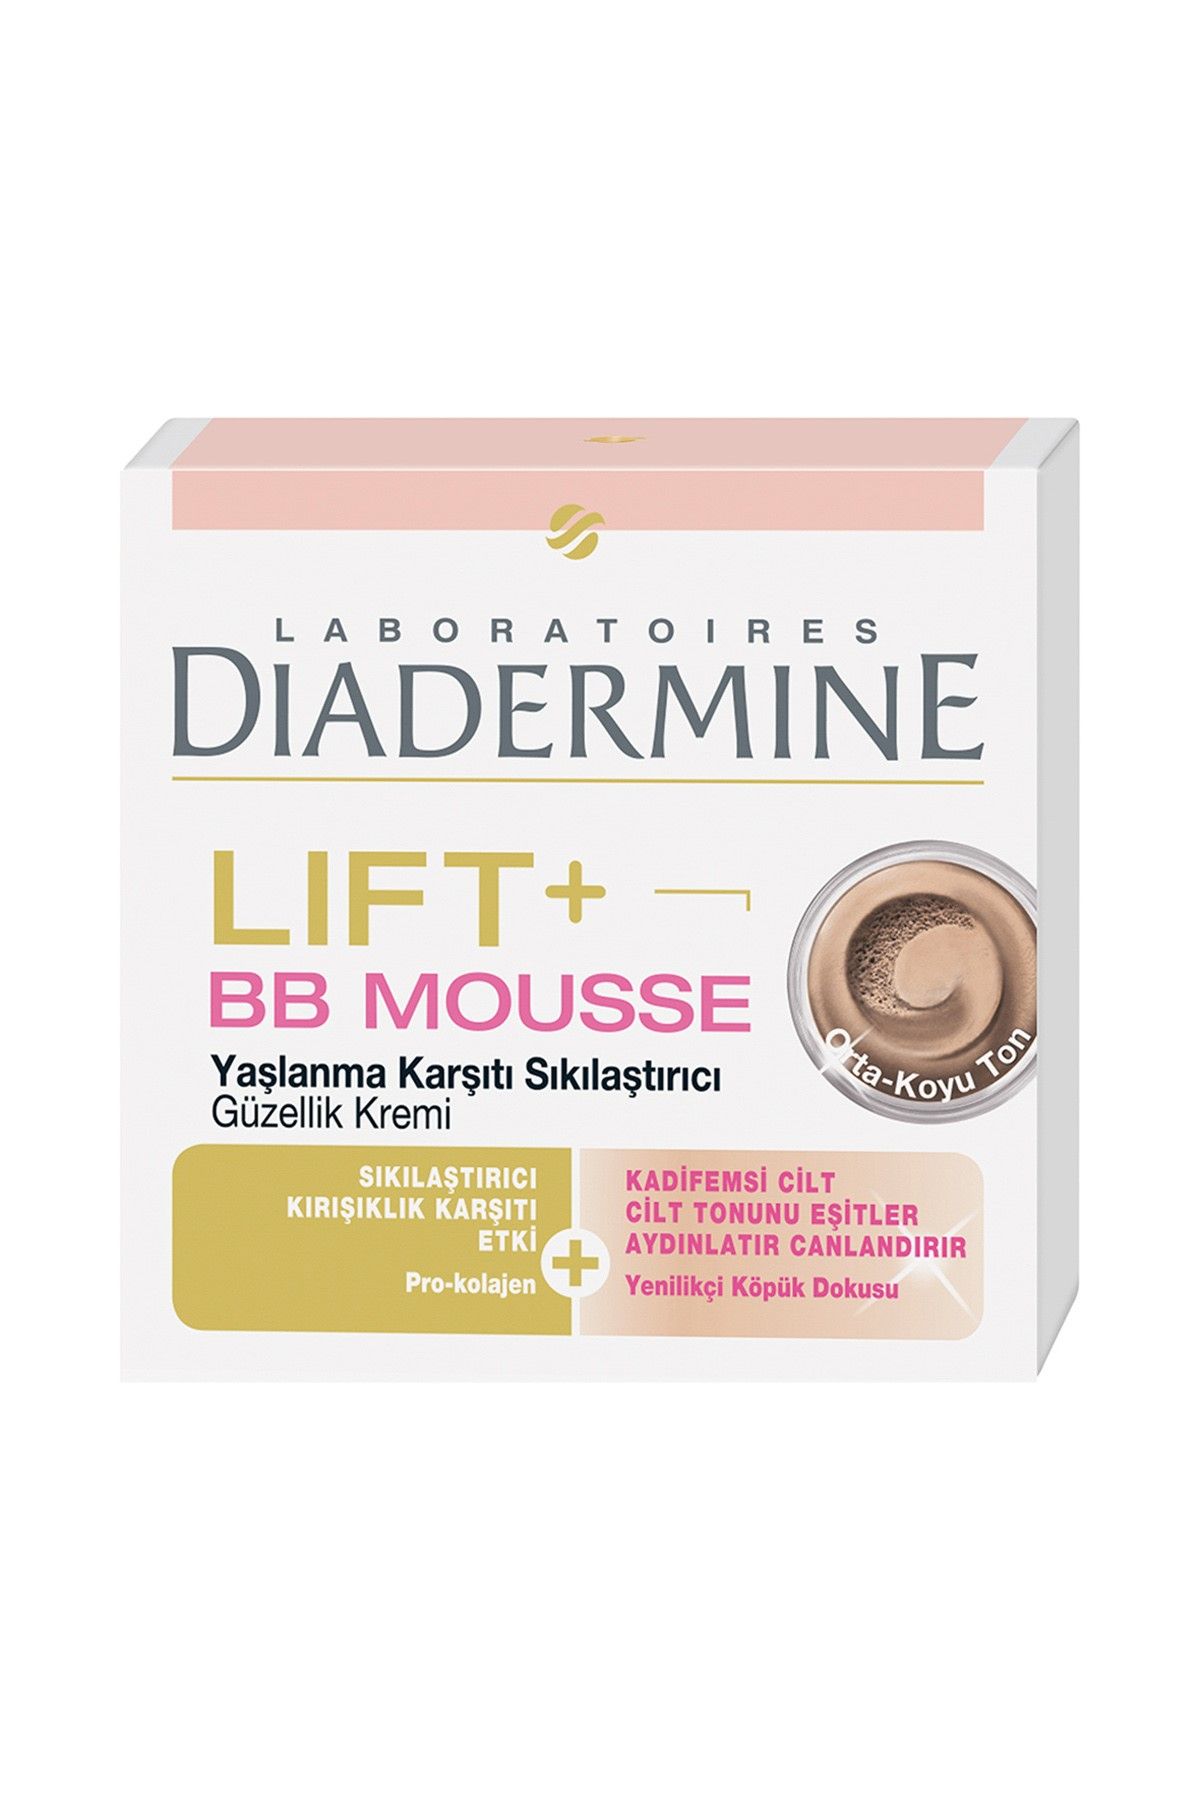 Diadermine Lift+ Bb Mousse Koyu Ton 50 ml 3178040699014